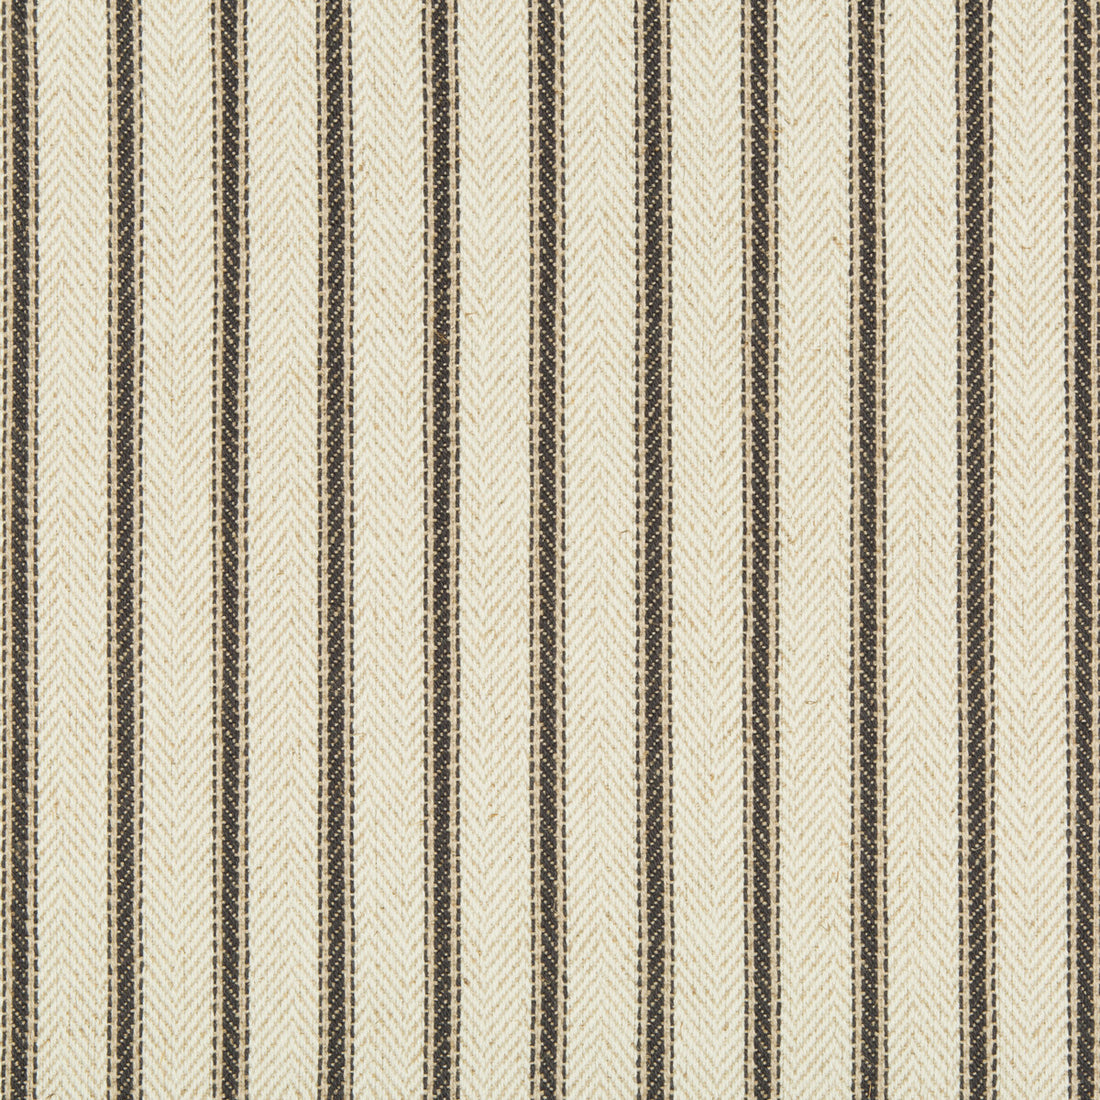 Kravet Basics fabric in 34896-1121 color - pattern 34896.1121.0 - by Kravet Basics